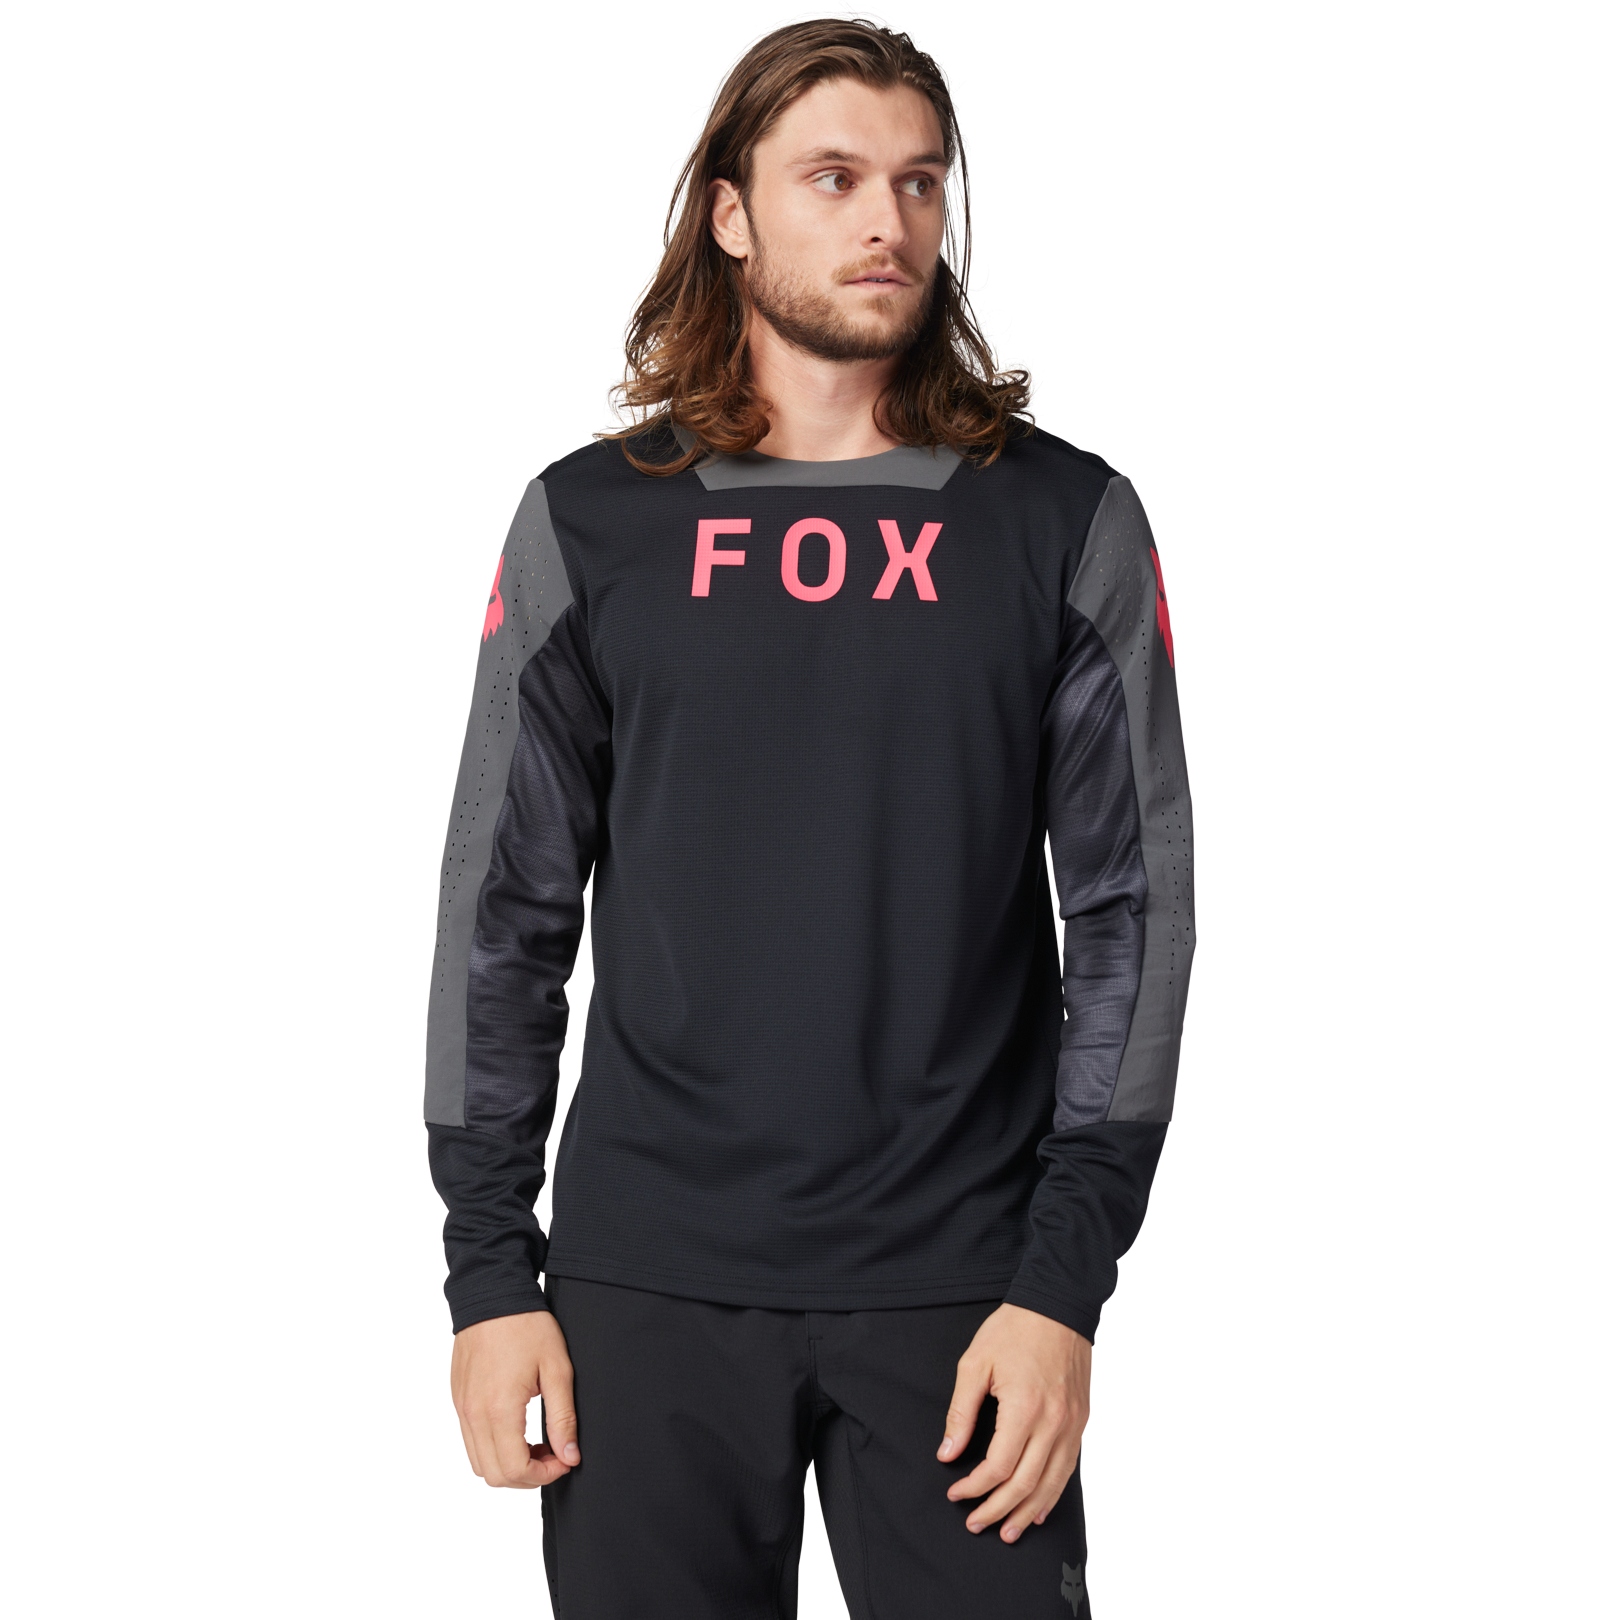 Productfoto van FOX Defend MTB Fietsshirt met lange mouwen Heren - Taunt - zwart